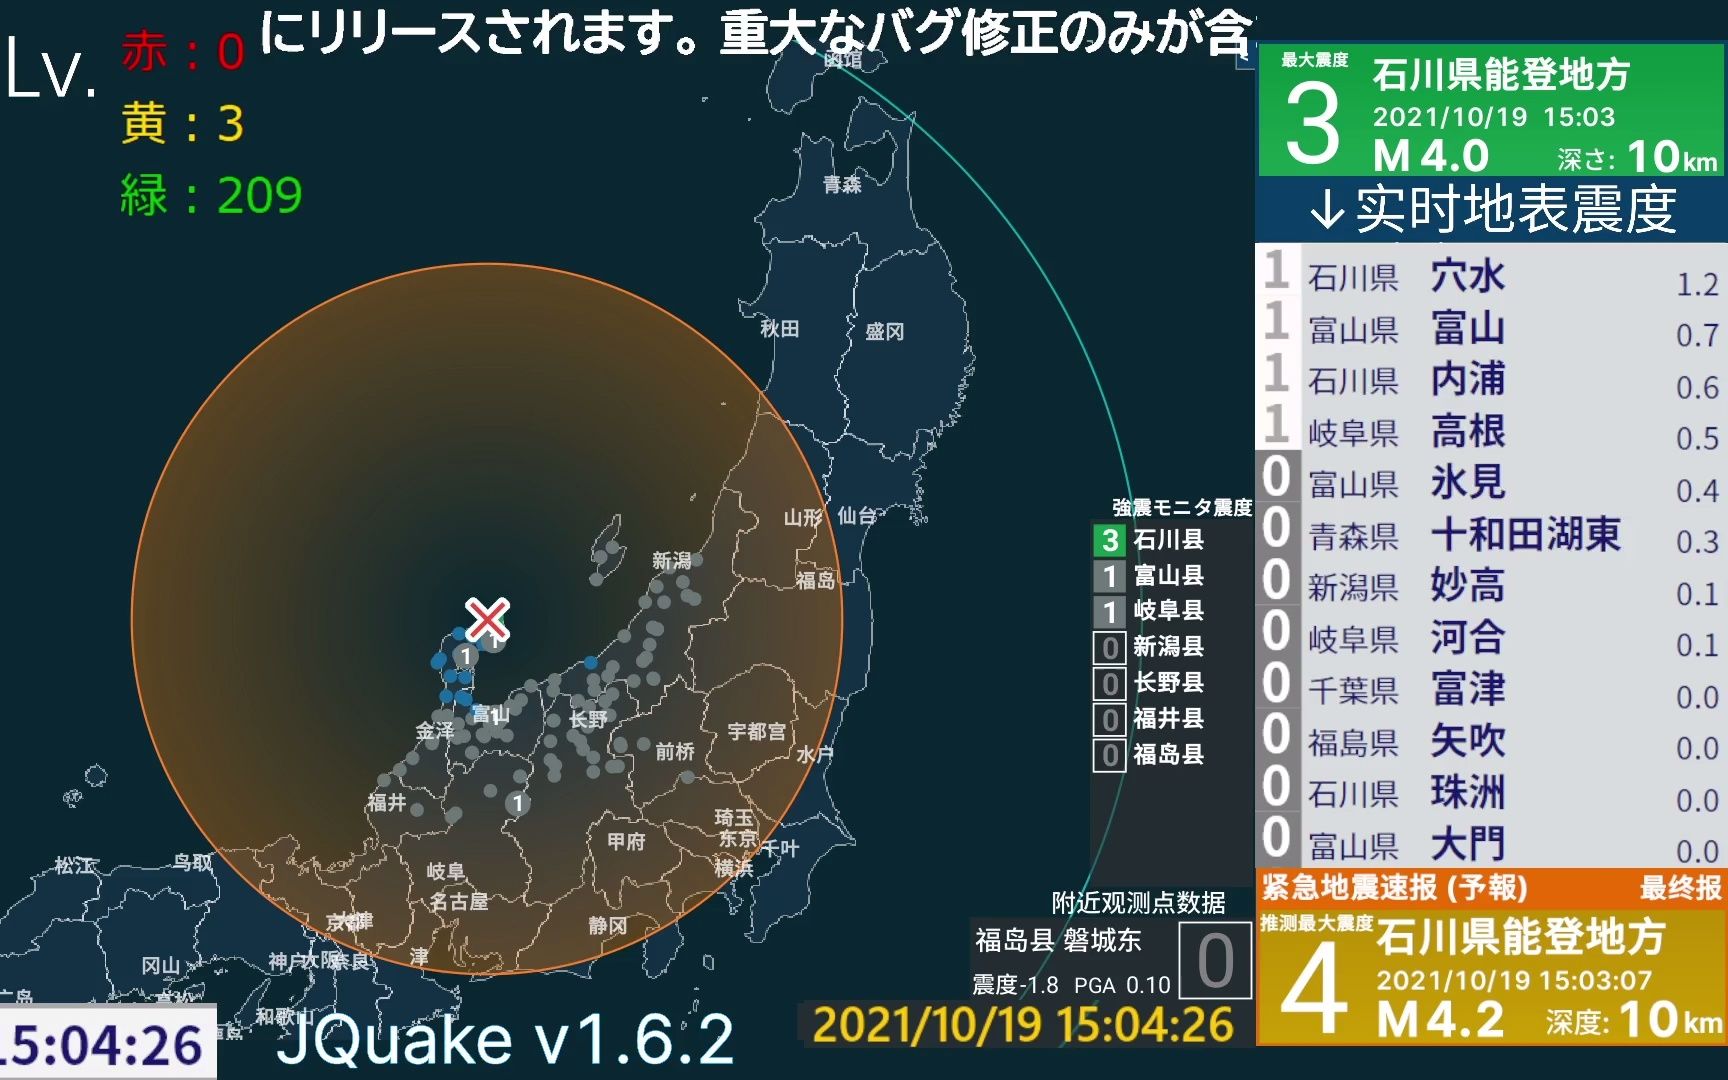 汶川地震一年 地震预报真相-新闻专题-科学网